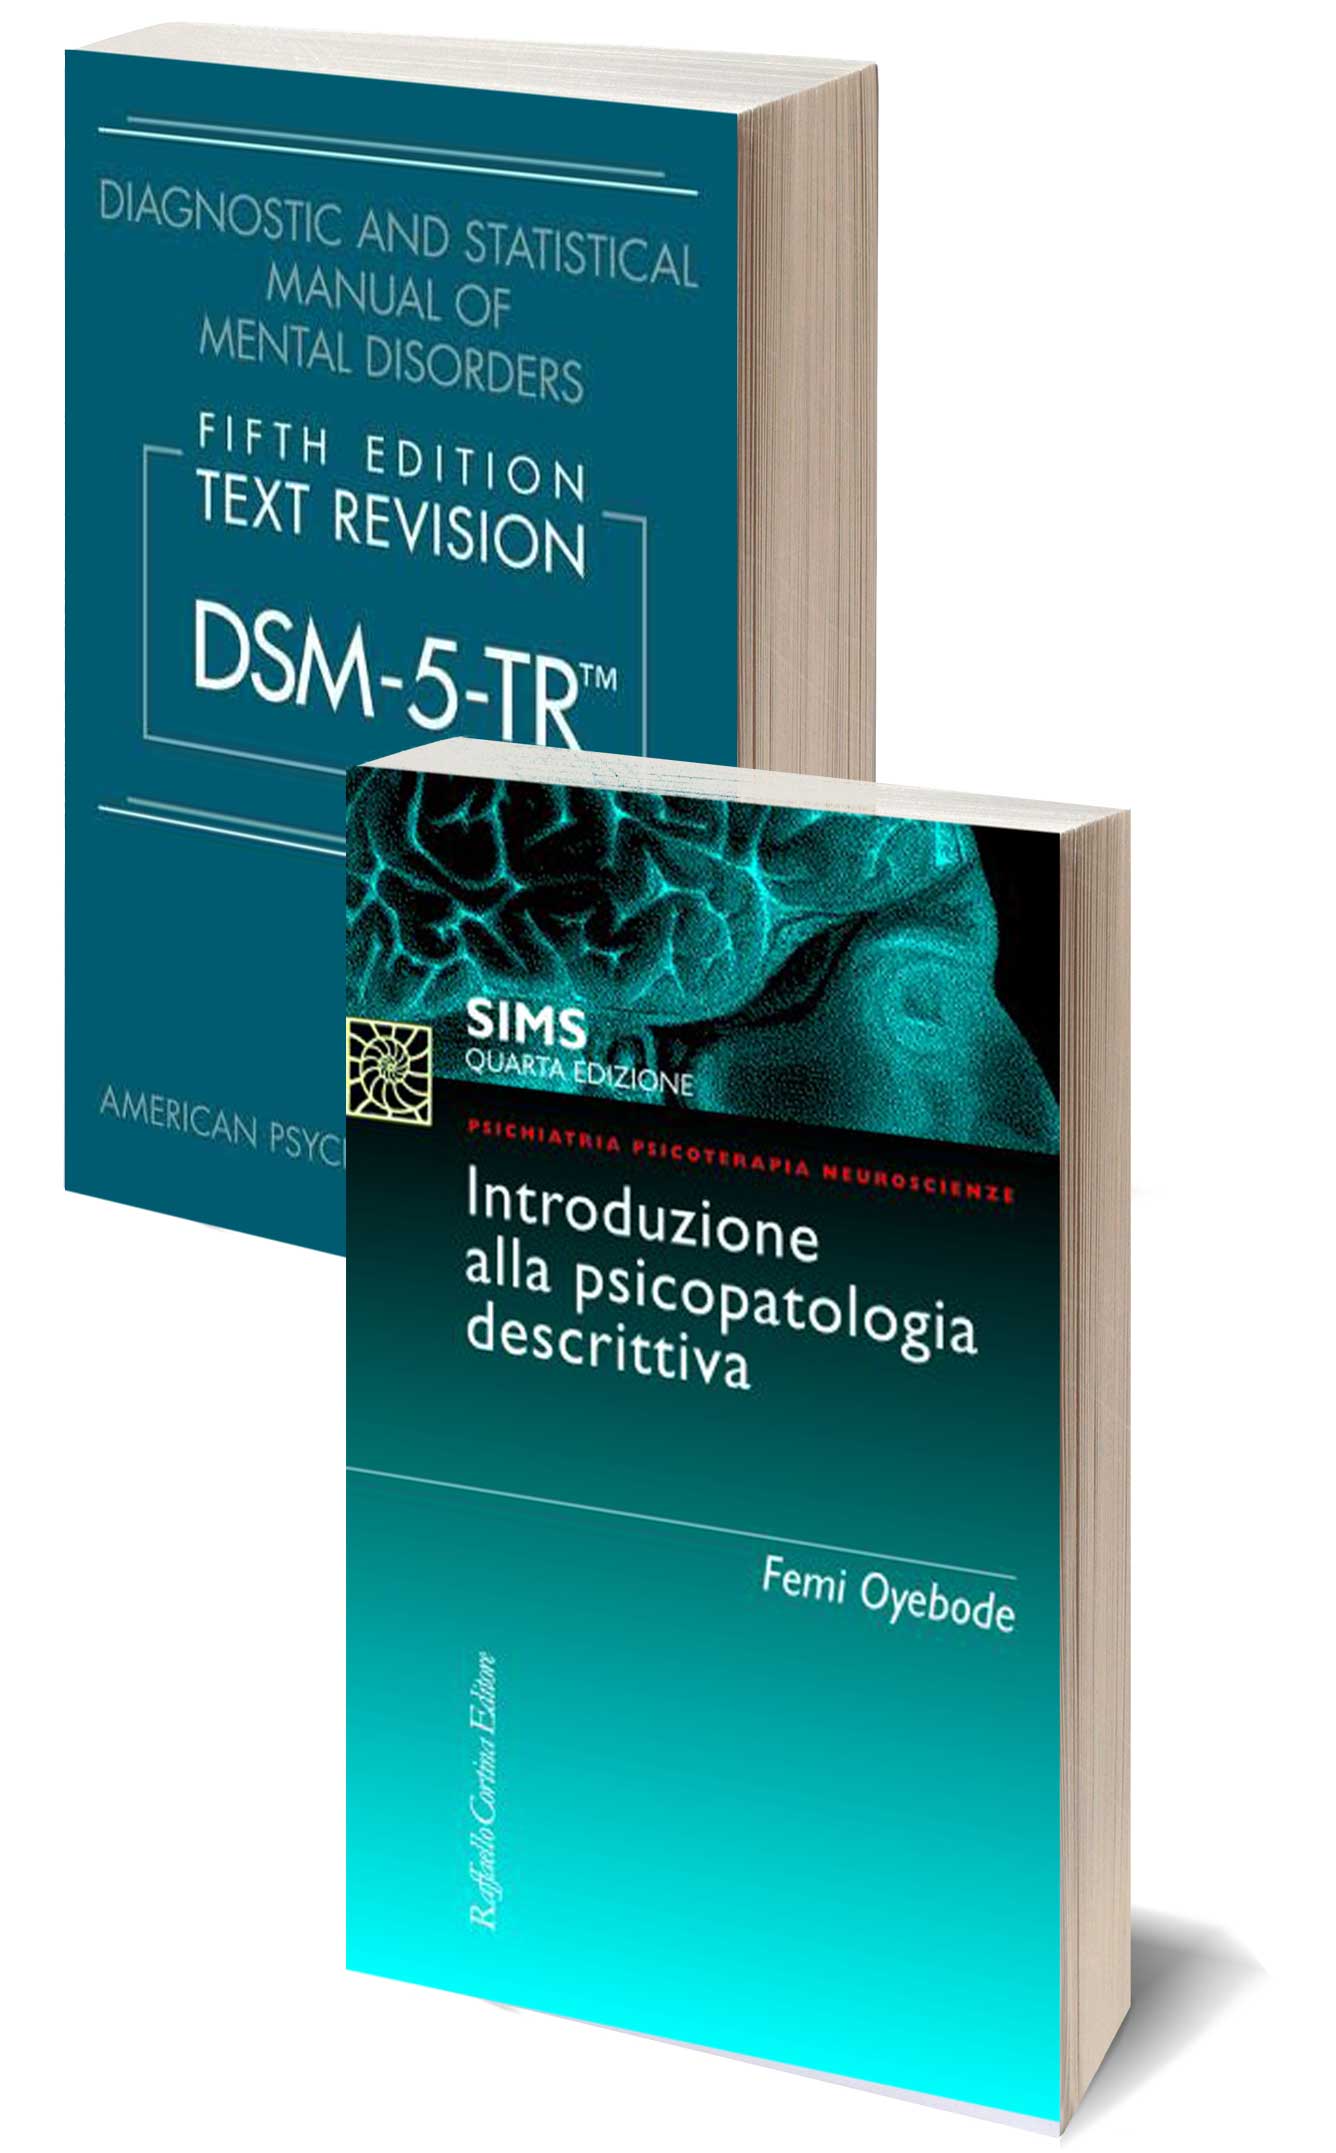 DSM-5-TR Text Revision + Introduzione alla psicopatologia descrittiva